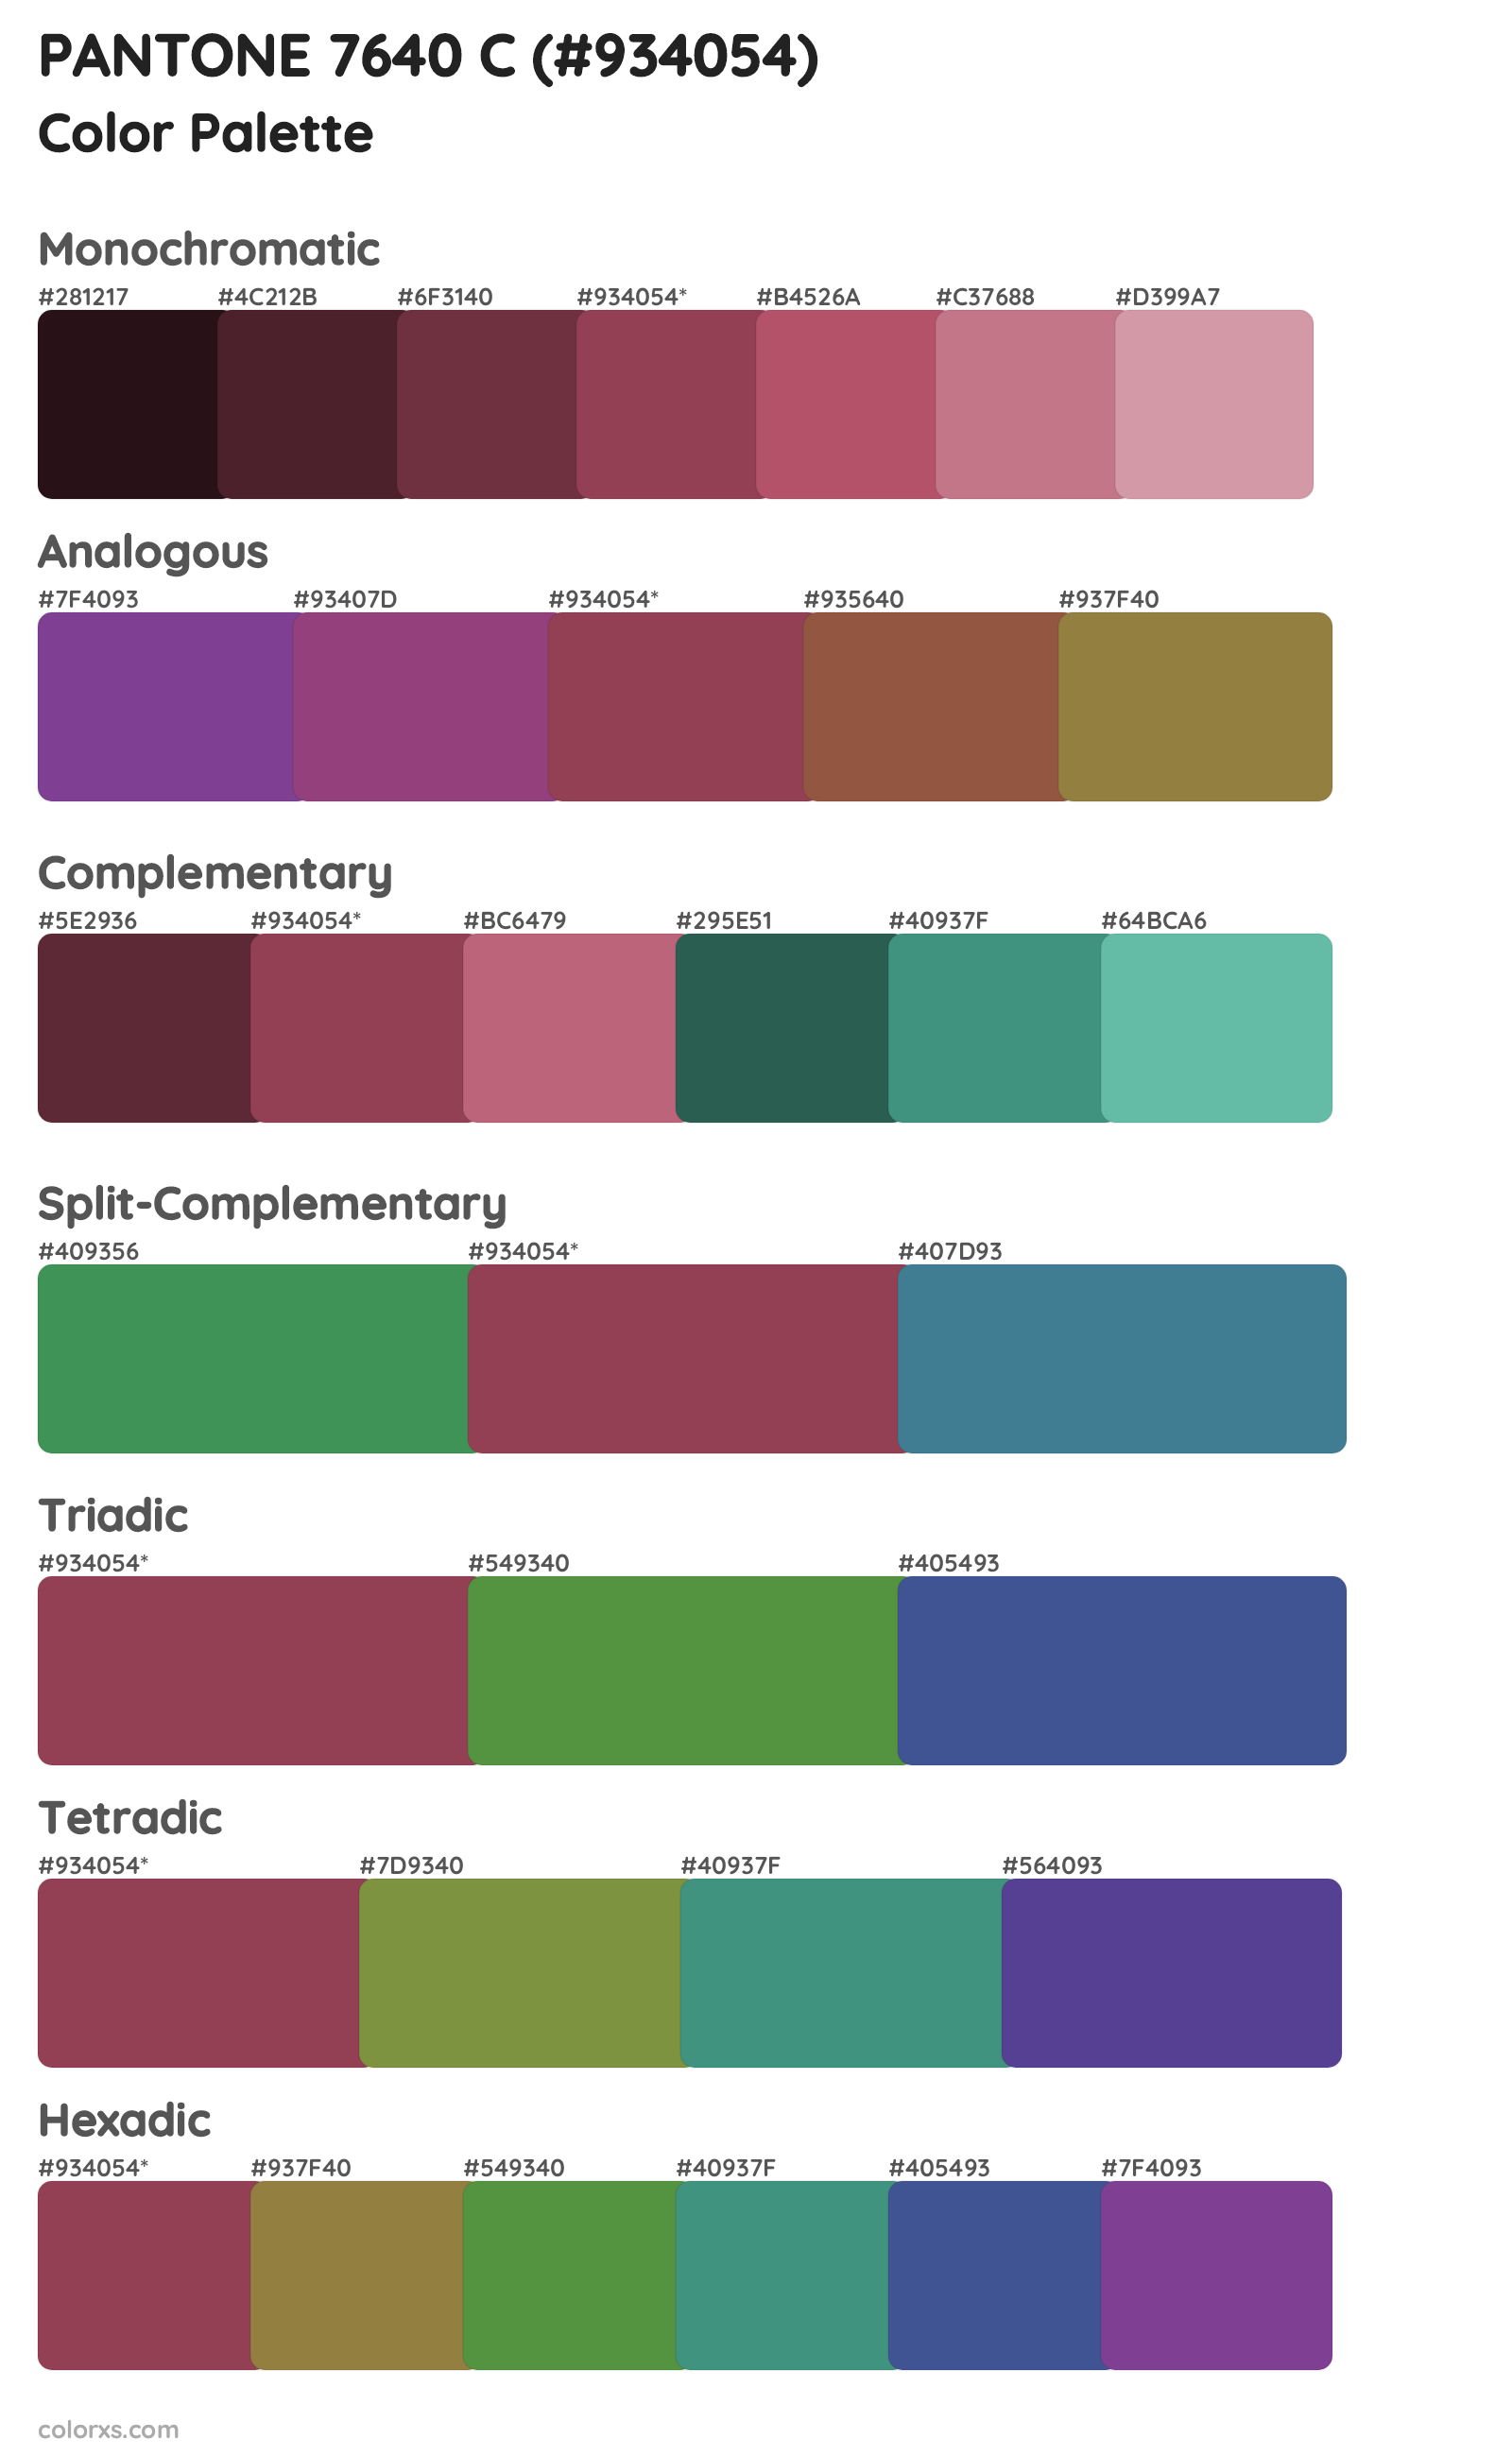 PANTONE 7640 C Color Scheme Palettes